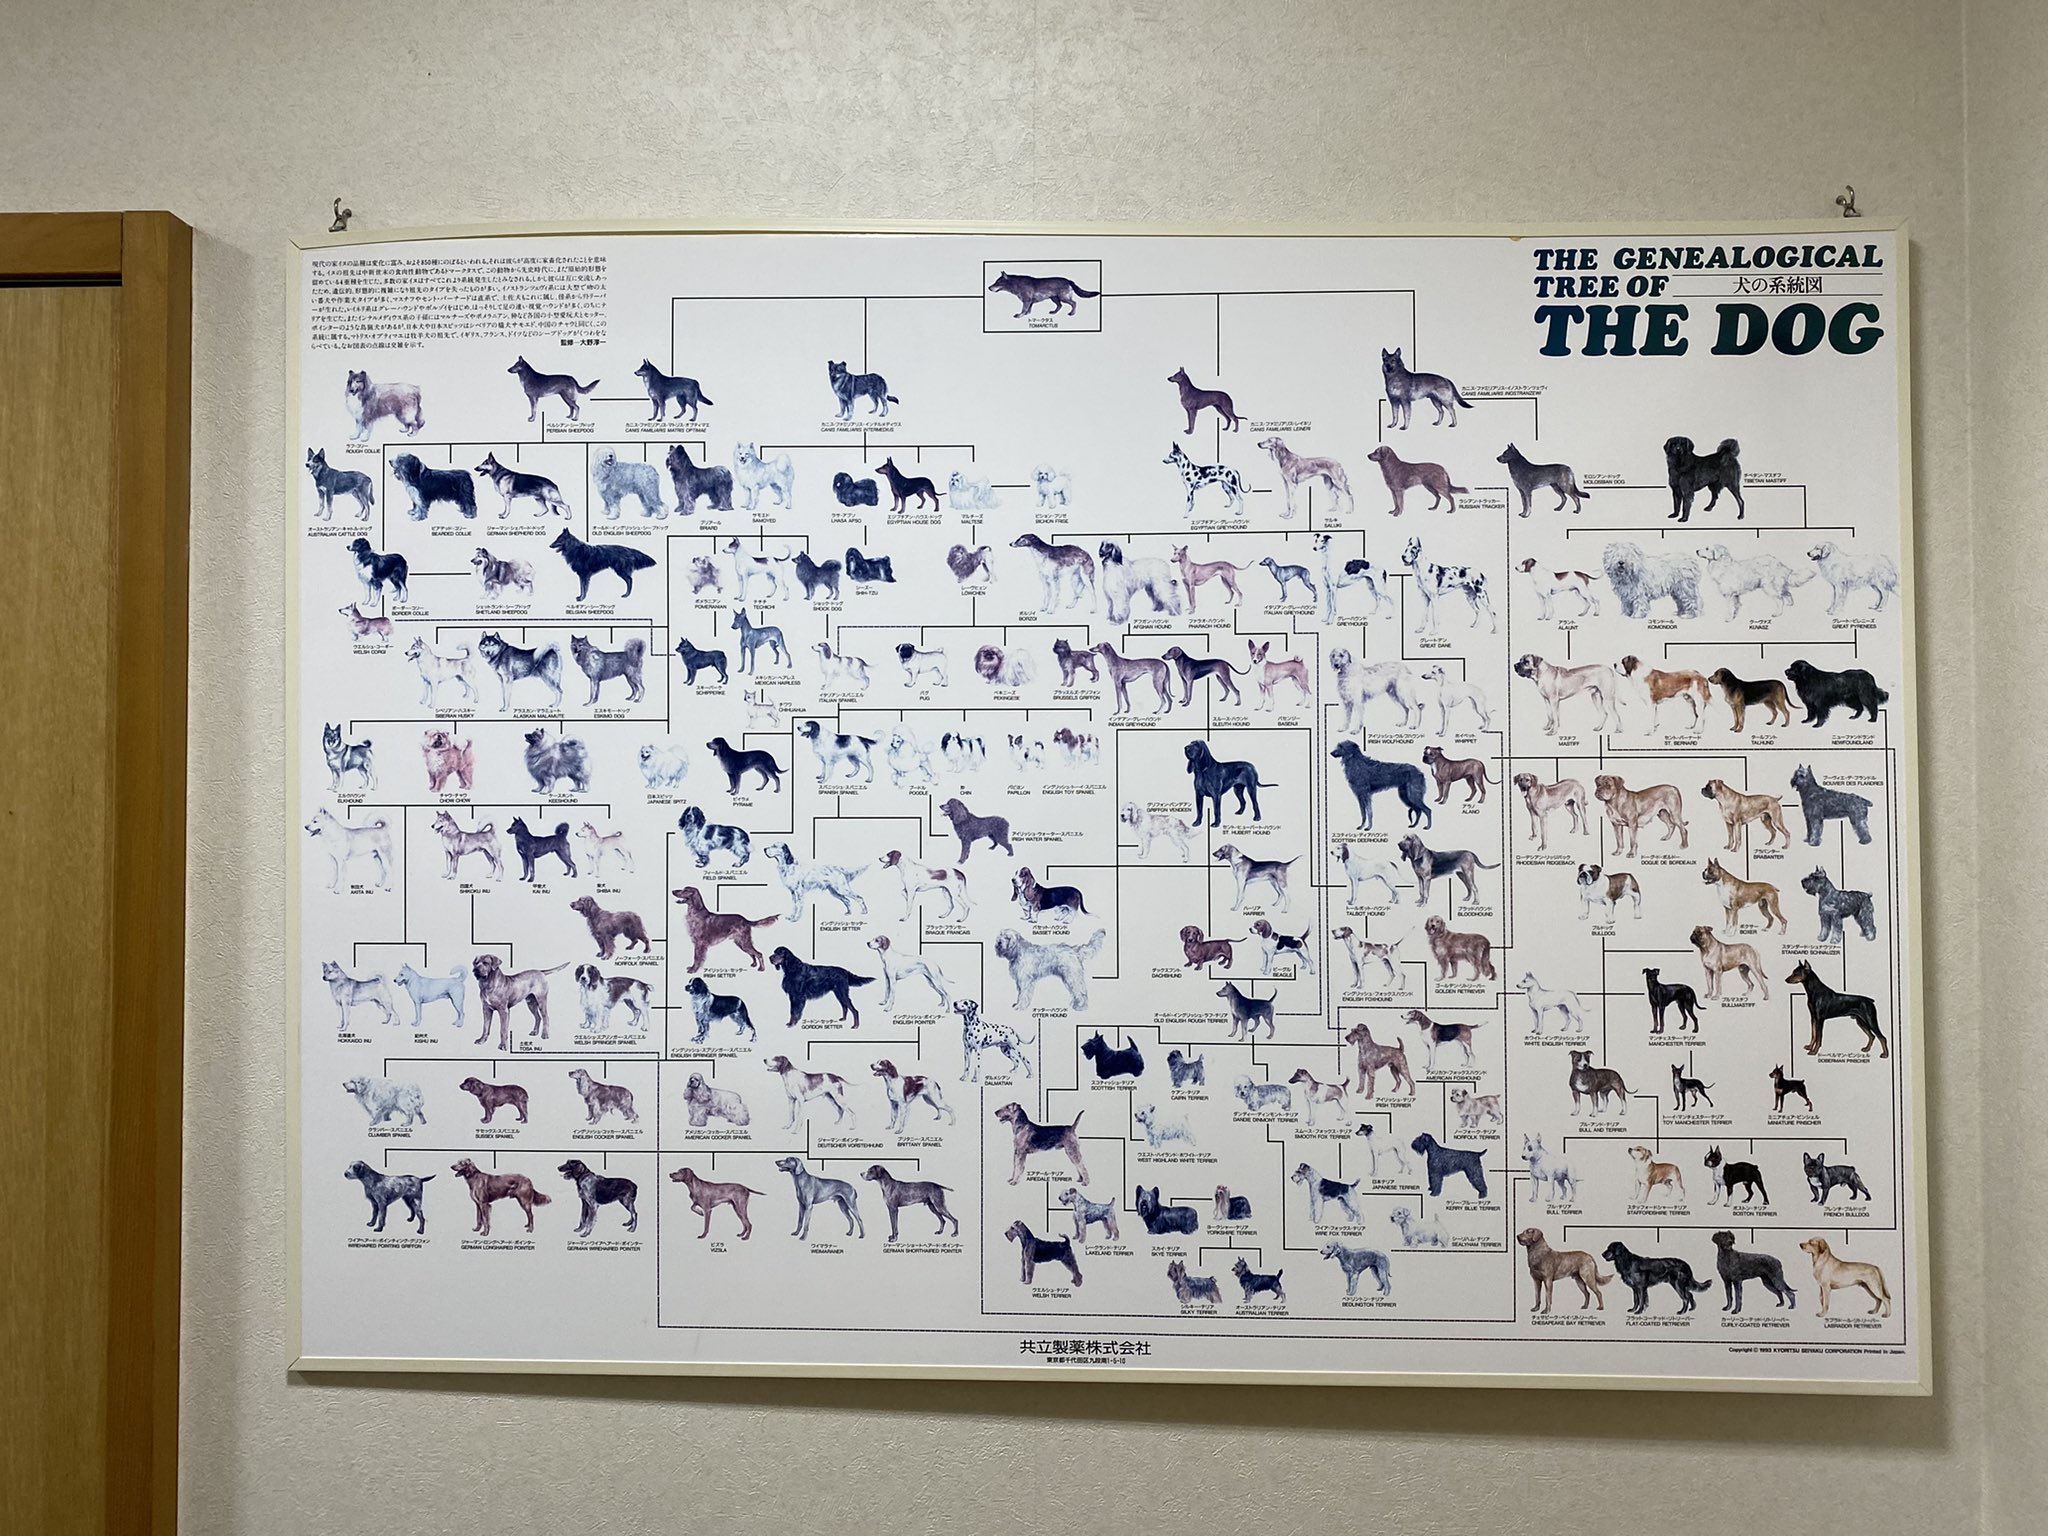 スミマサノリ A Twitter 動物病院にあった犬の系統図が面白くてずっと見てた 全ての犬種の源 トマークタスって奴 凄いな